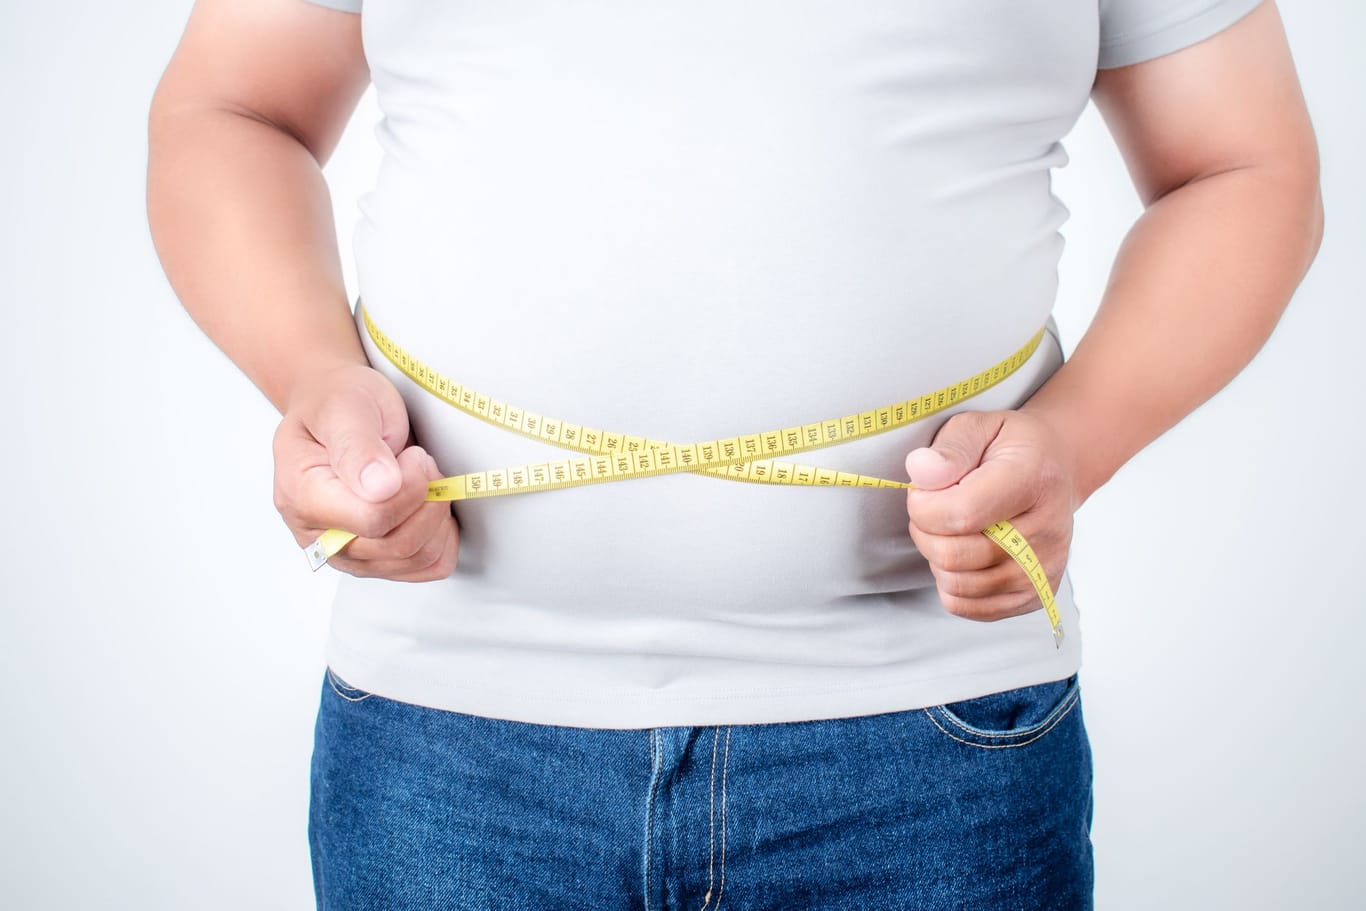 Laut dem Bundeszentrum für Ernährung sollte der Bauchumfang bei Frauen unter 88 cm und bei Männern unter 102 cm liegen.